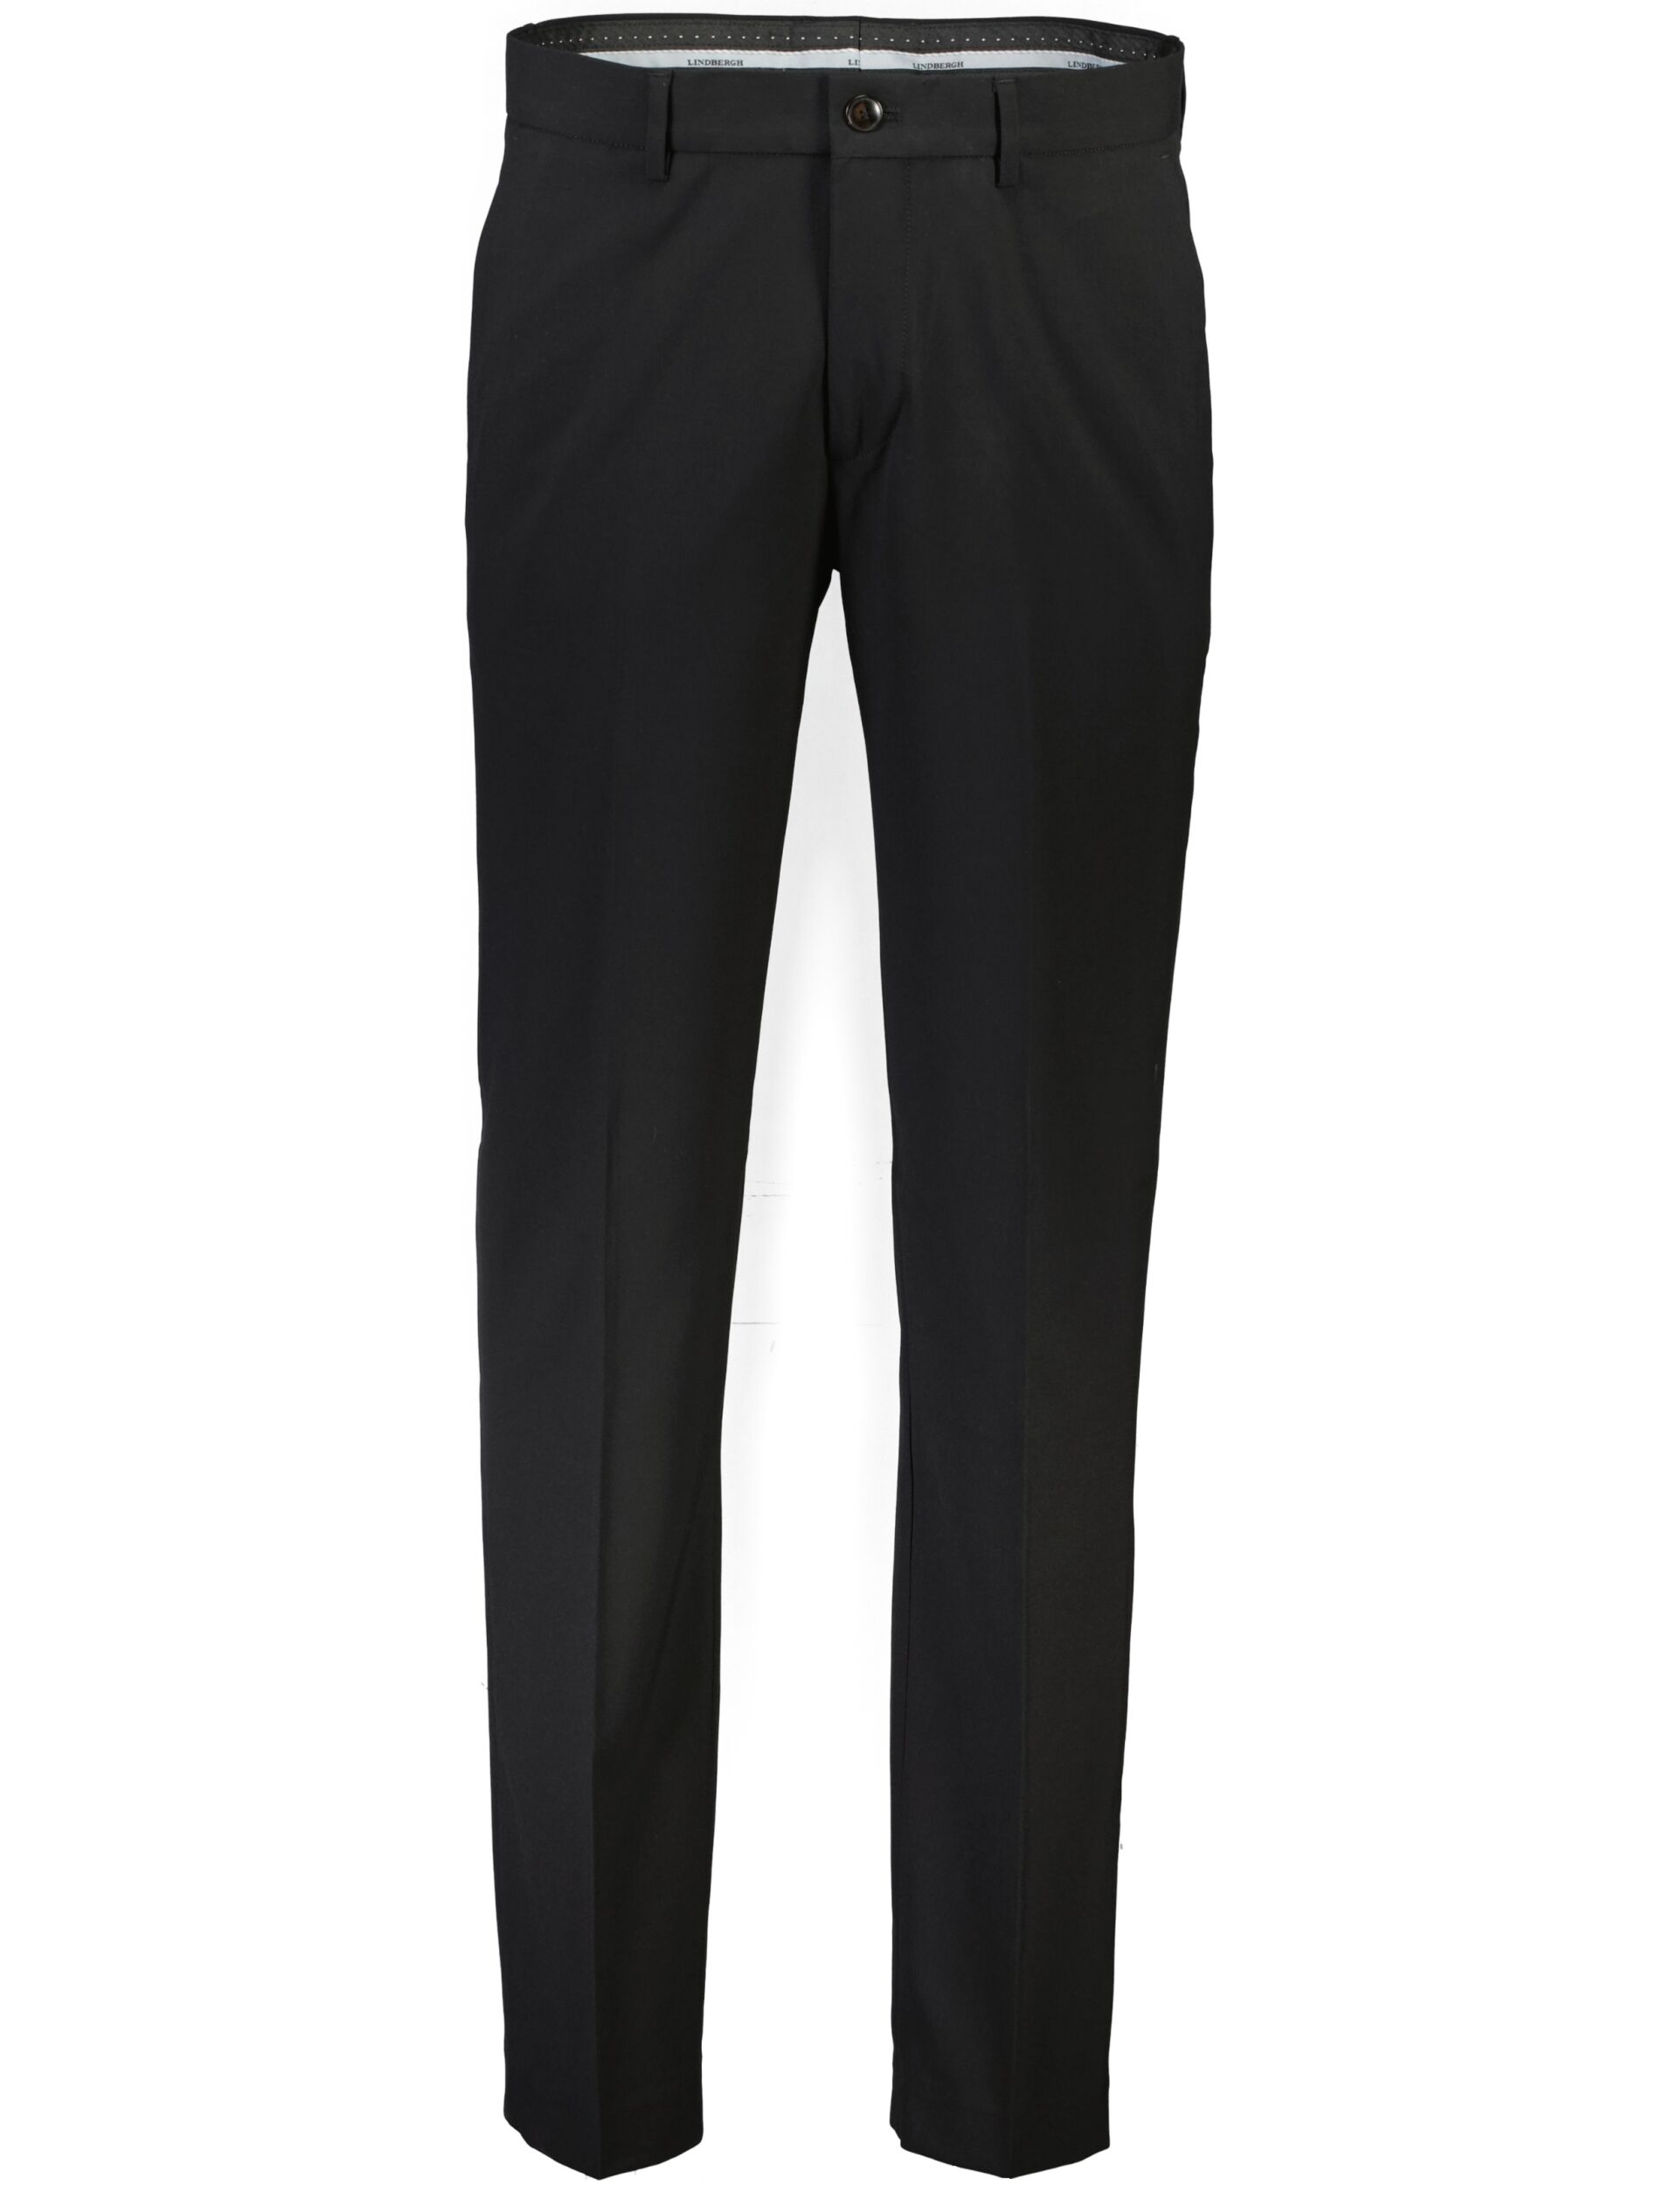 Suit pants Suit pants Black 30-046020-X